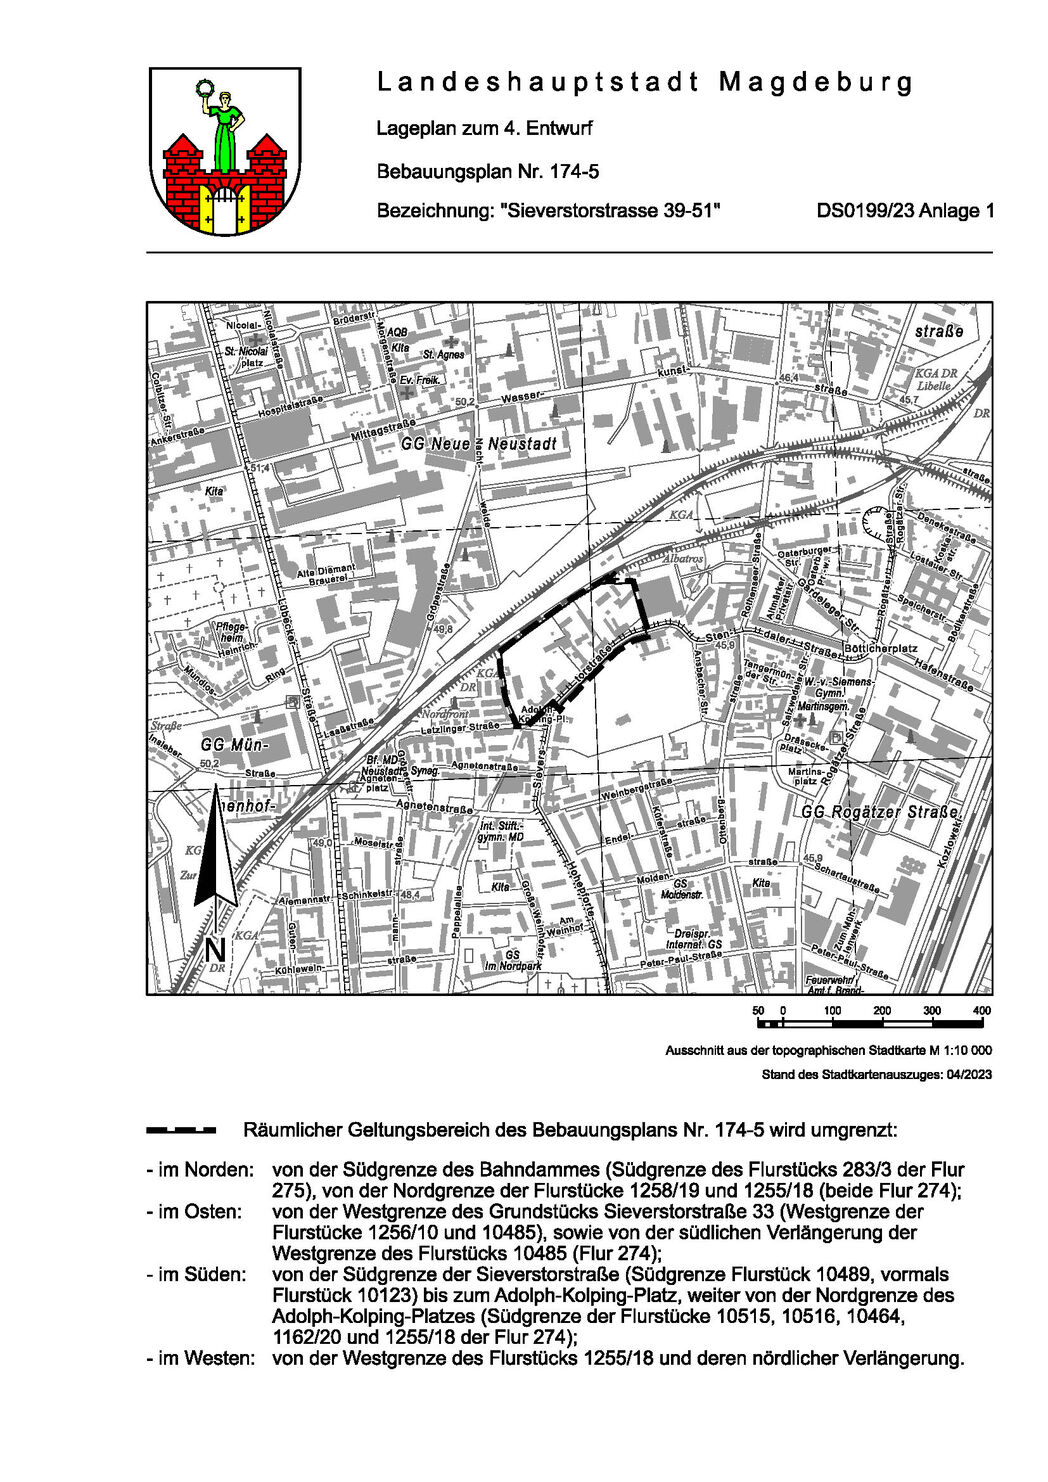 Bild vergrößern: Lageplan für 4. Entwurf des Bebauungsplans 174-5 "Sieverstorstraße 39-51"